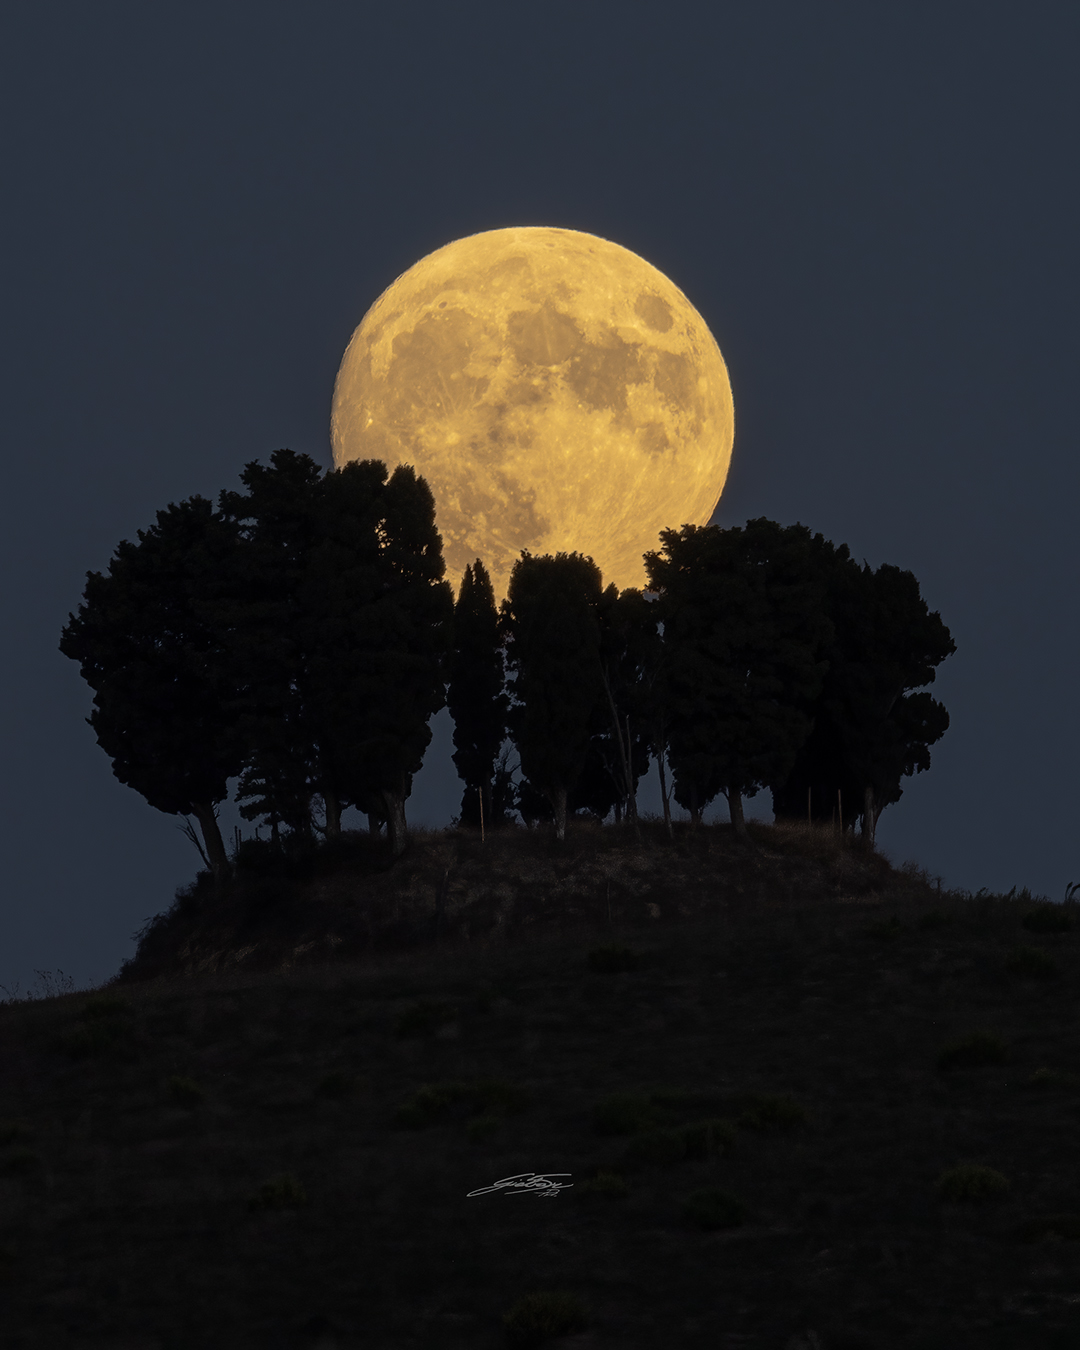 Hinter einer Gruppe Zypressen, von denen man nur dunkle Silhouetten sieht, geht ein gelb leuchtender Mond auf. Die dunklen Flecken der Mondmeere sind gut zu erkennen.